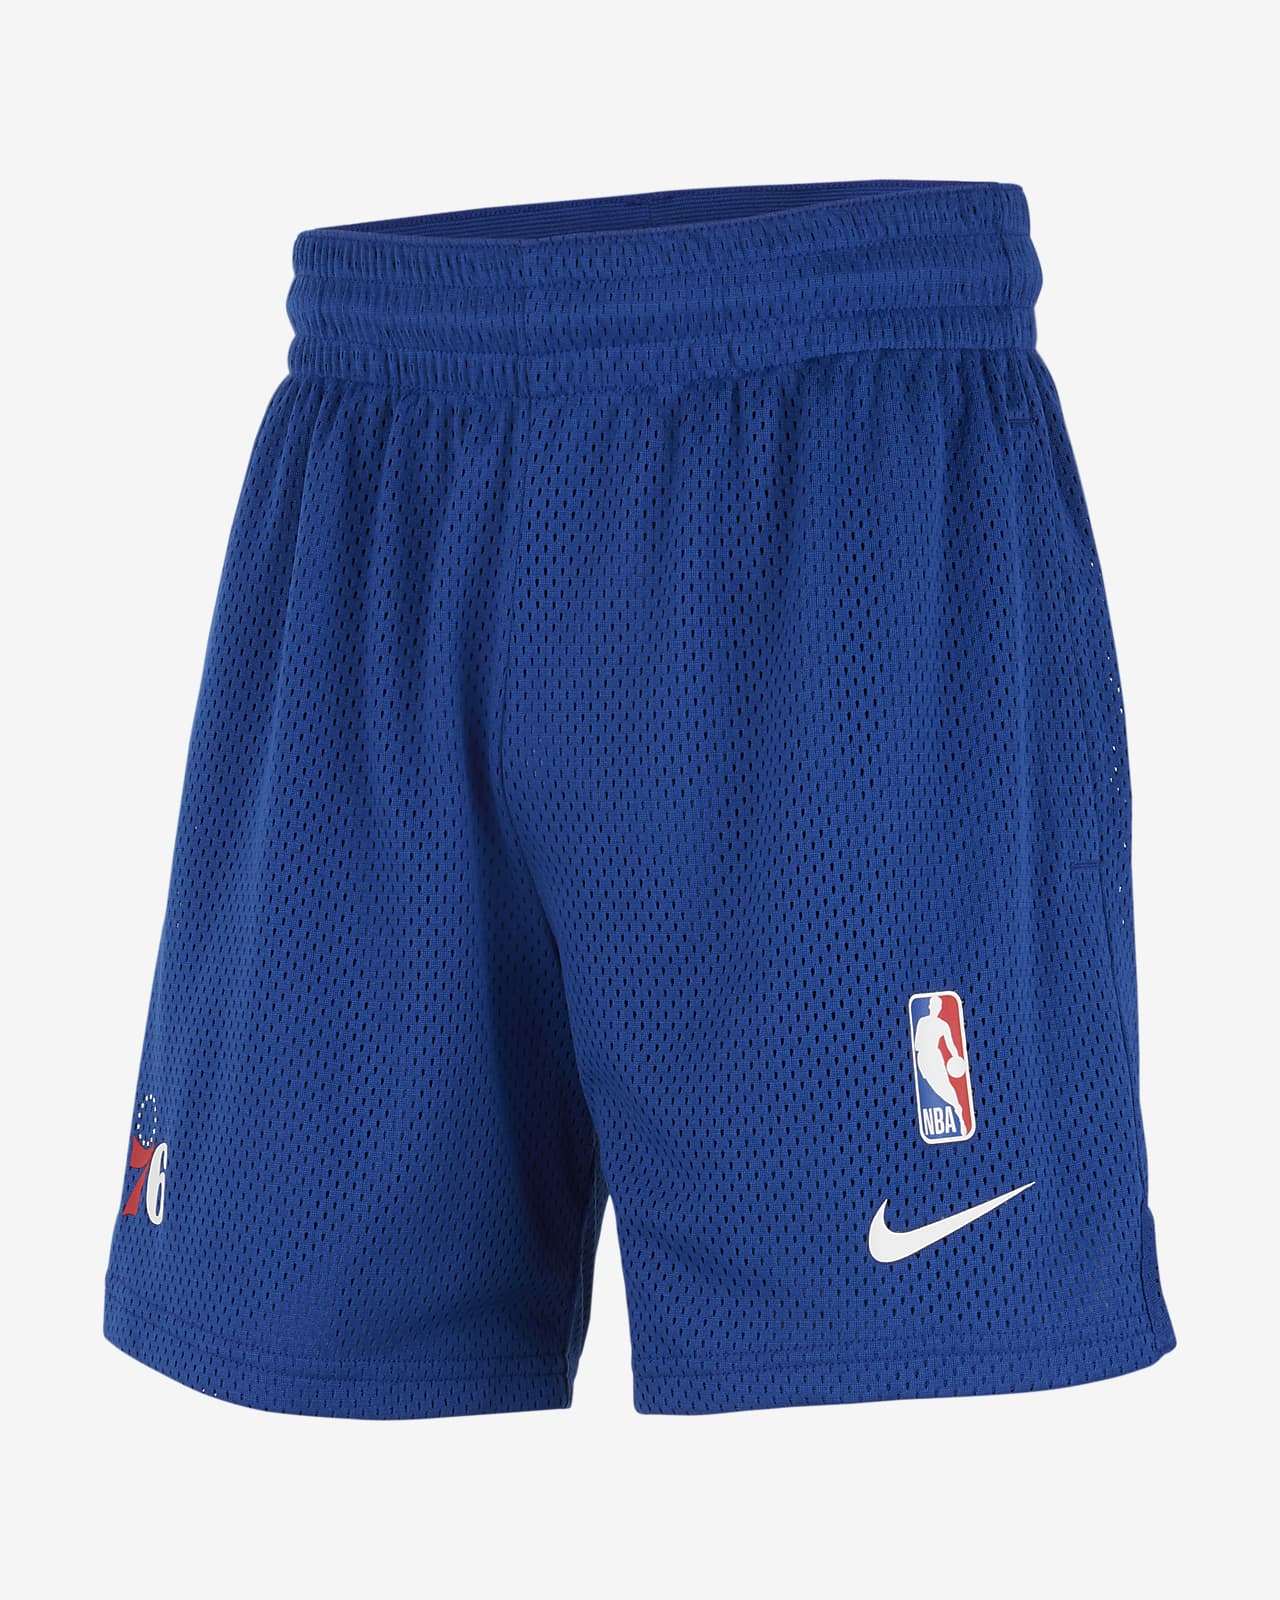 Philadelphia 76ers Spotlight Big Kids' Nike Dri-FIT NBA Shorts. Nike.com